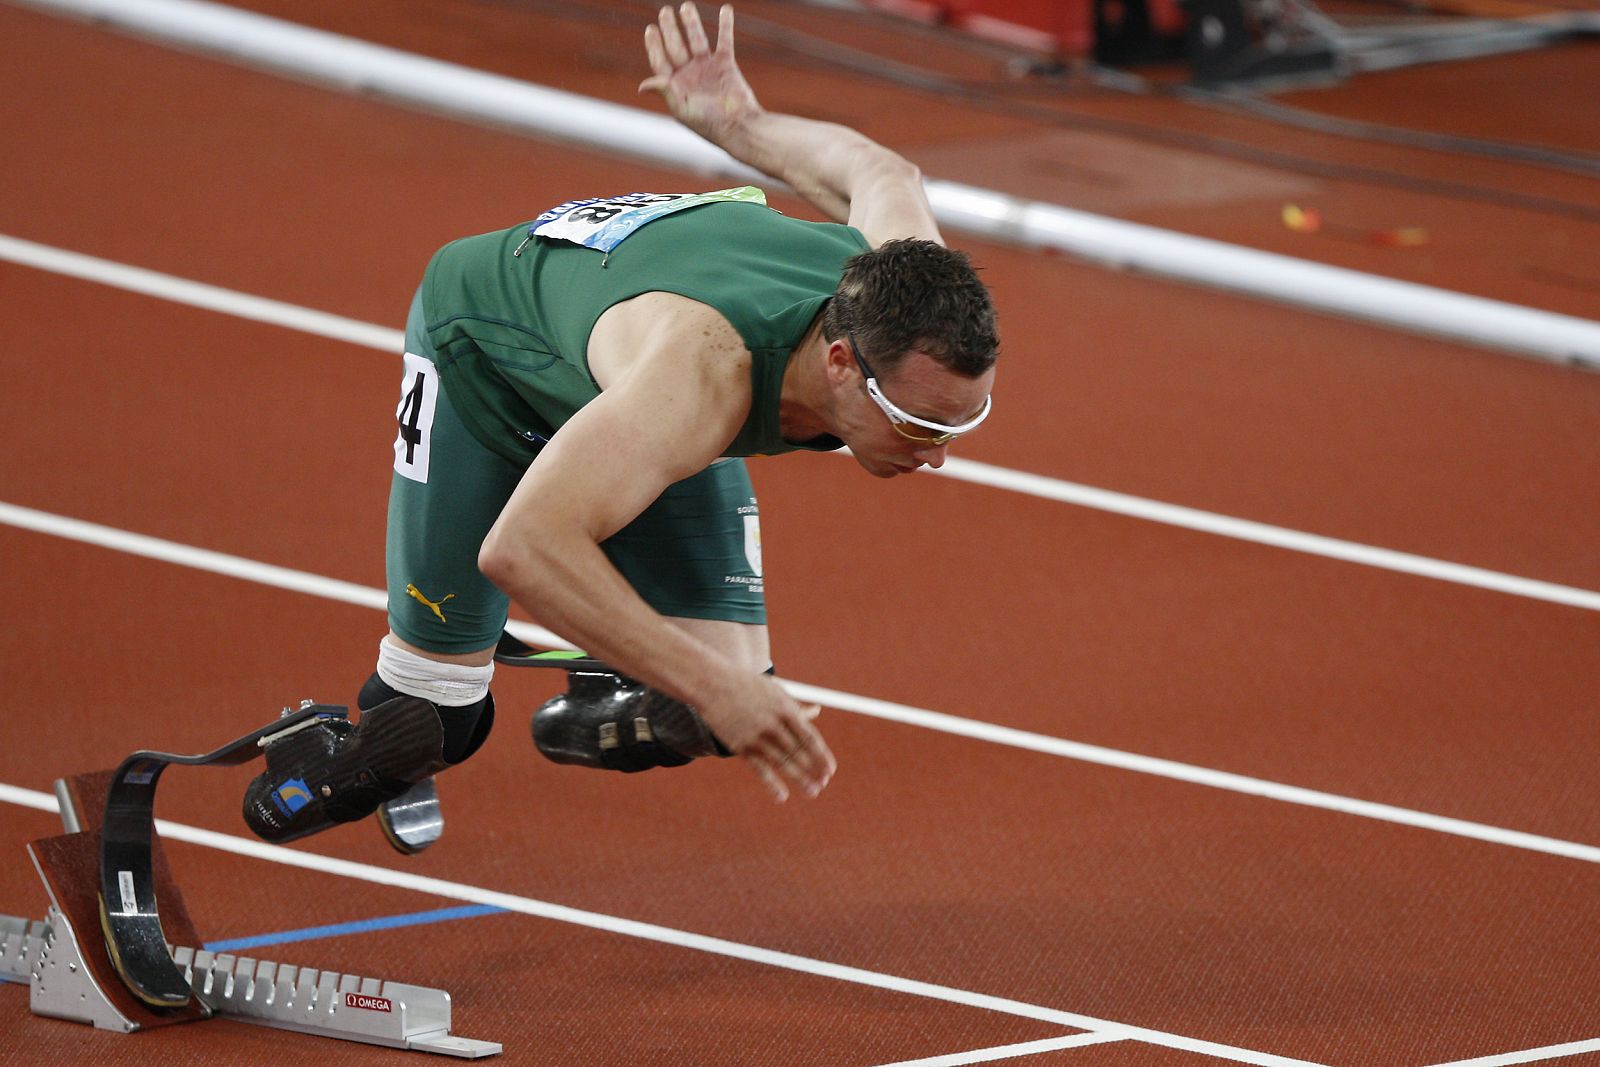 El atleta paralímpico sudafricano saltó a la fama por querer competir con los atletas sin discapacidad.